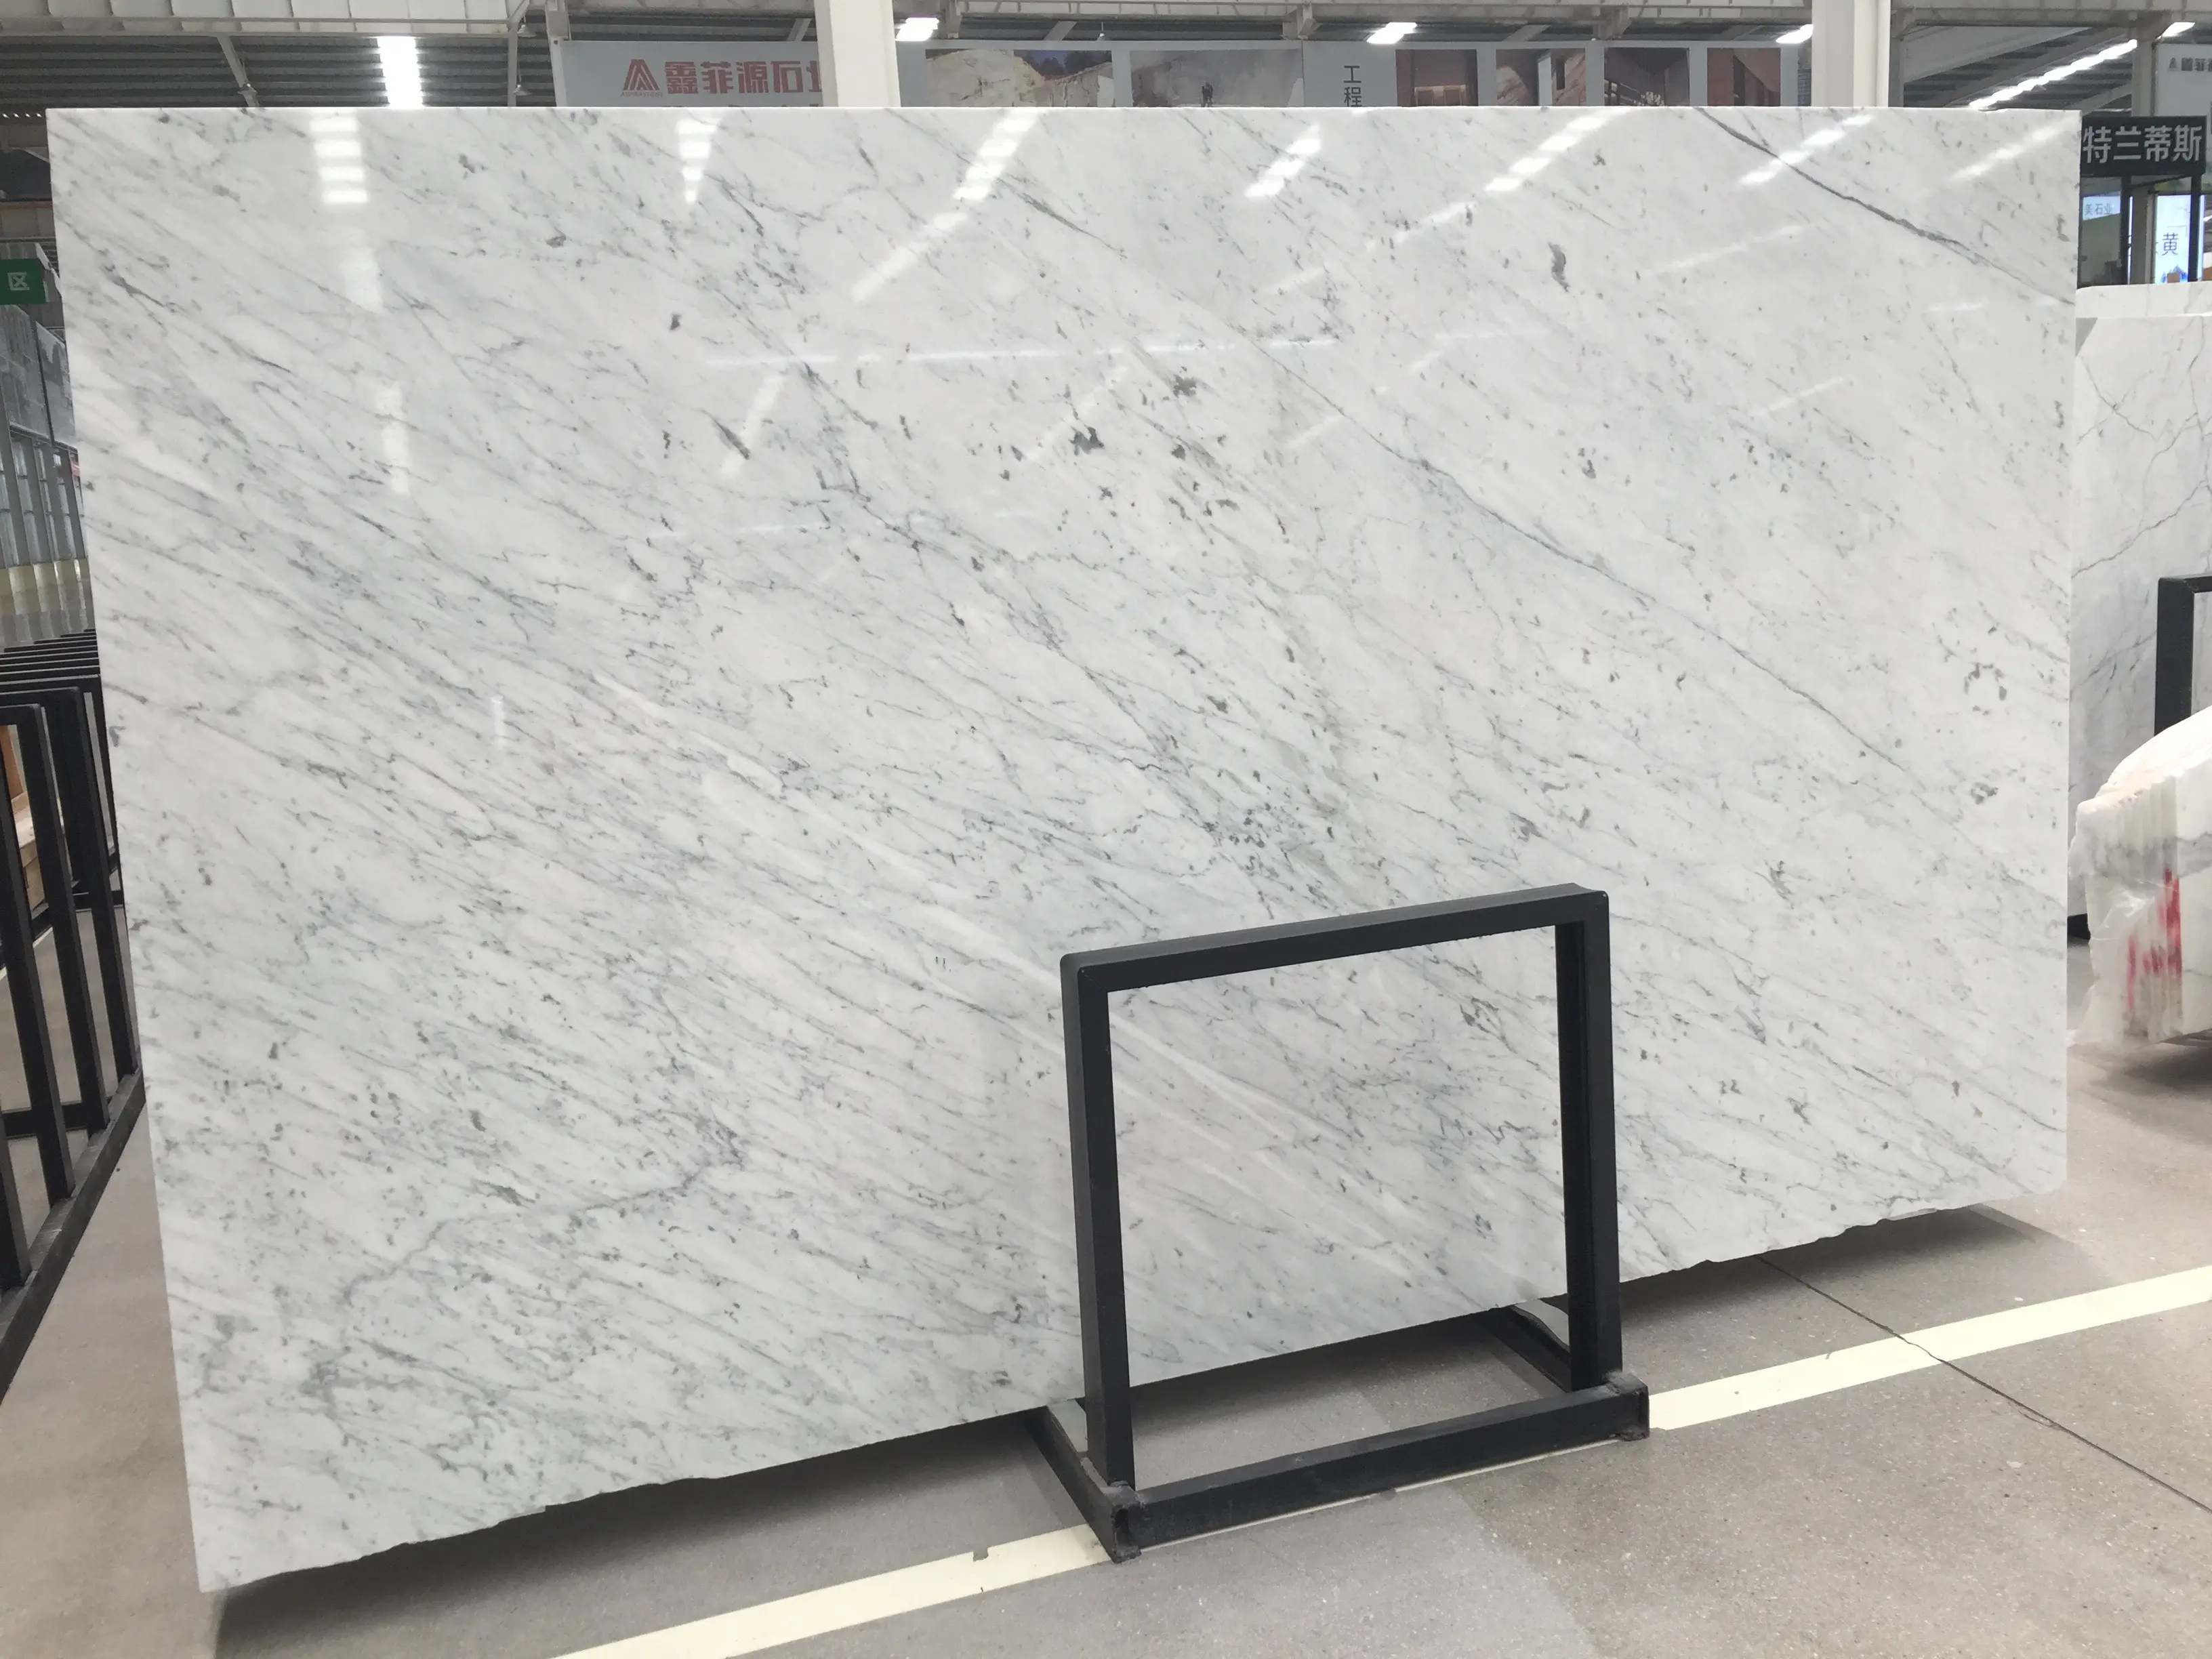 Italien Luxus Bianco Carrara Marmorplatten weißer Marmor polierte Porzellan Bodenfliesen wasserdicht für Boden für Projekt